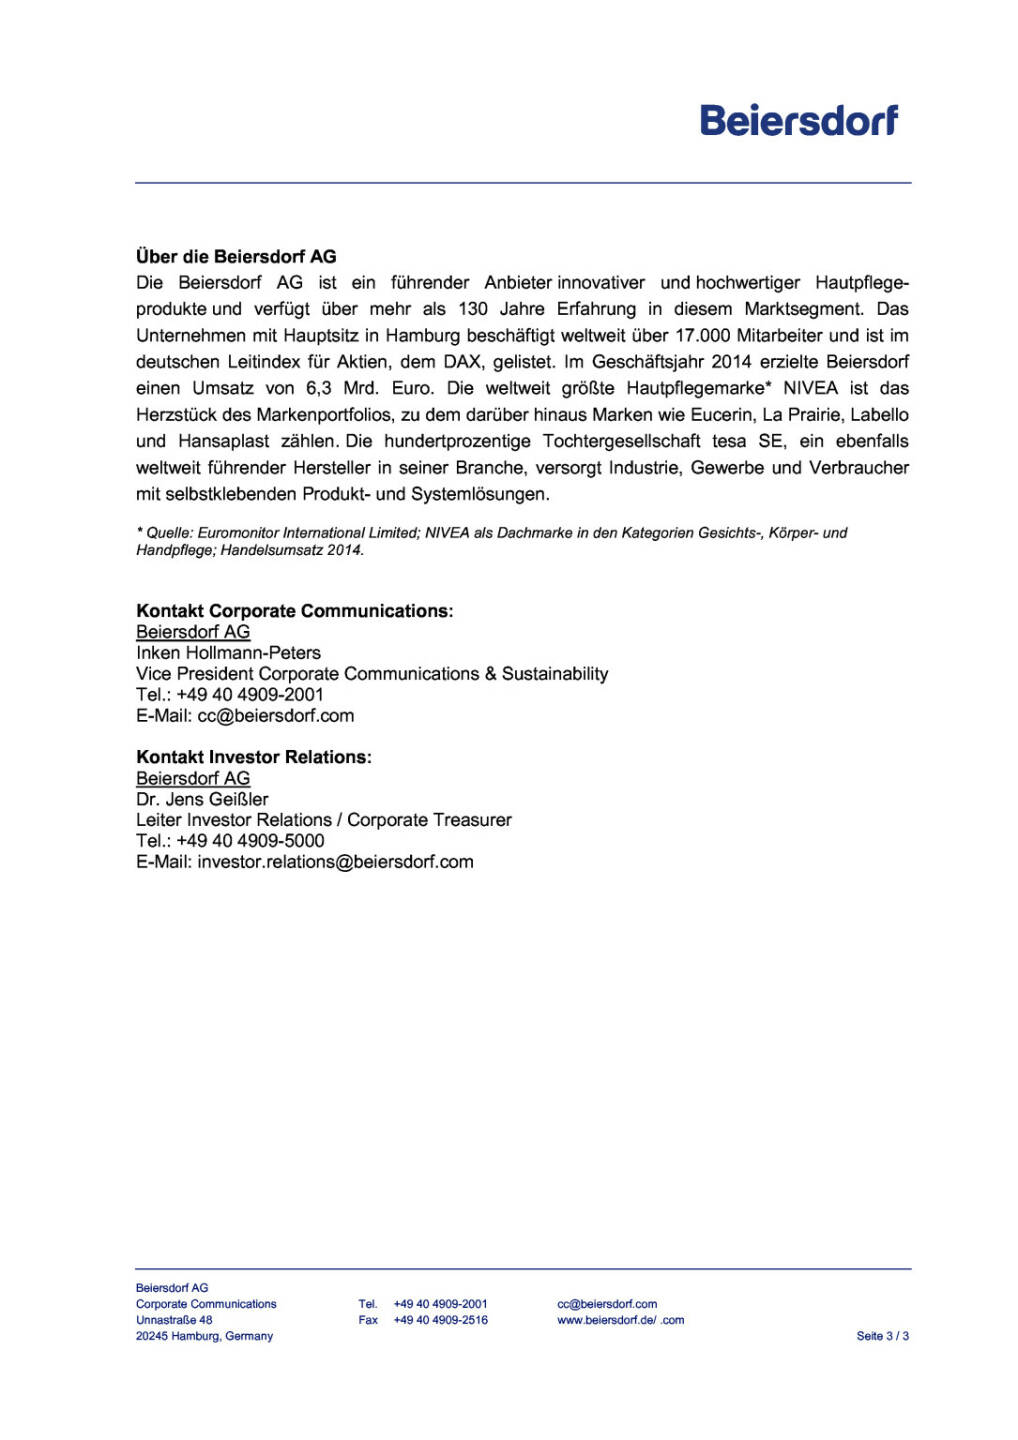 Beiersdorf: vorläufige Umsatzzahlen 2015, Seite 3/3, komplettes Dokument unter http://boerse-social.com/static/uploads/file_550_beiersdorf_vorlaufige_umsatzzahlen_2015.pdf